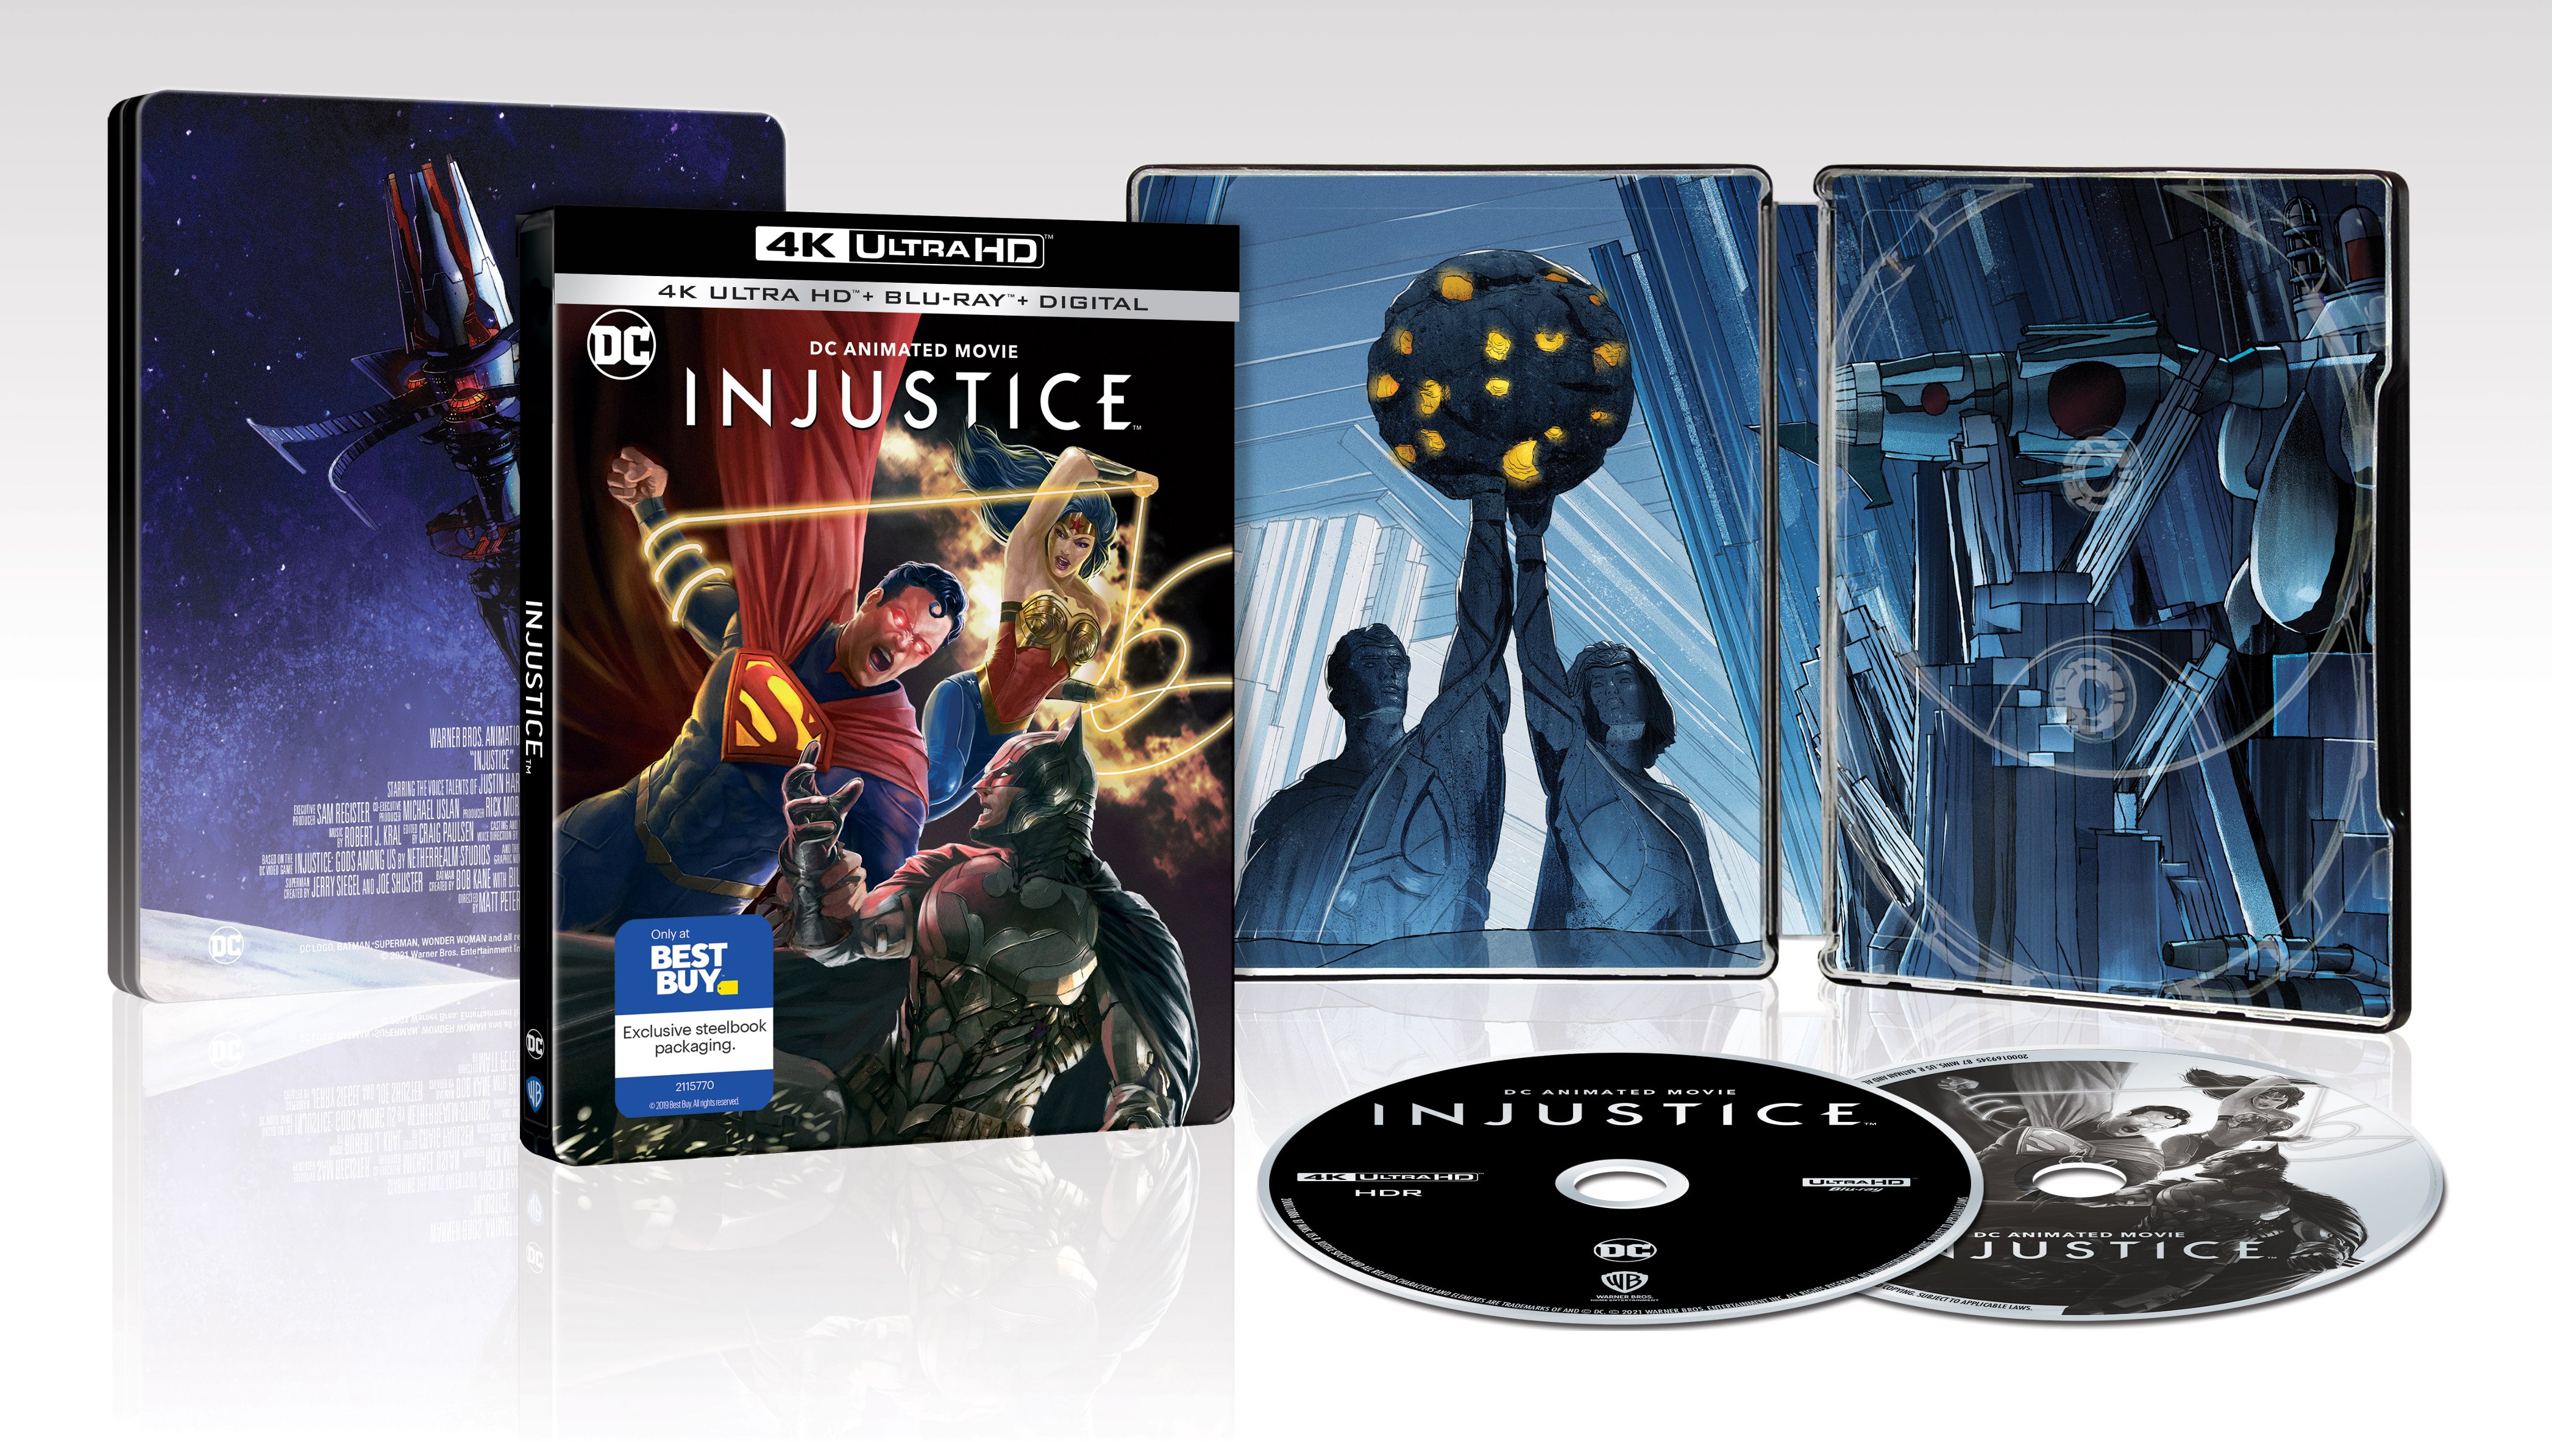 Injustice [SteelBook] [Includes Digital Copy] [4K Ultra HD Blu-ray/Blu-ray]  [Only @ Best Buy] [2021] - Best Buy